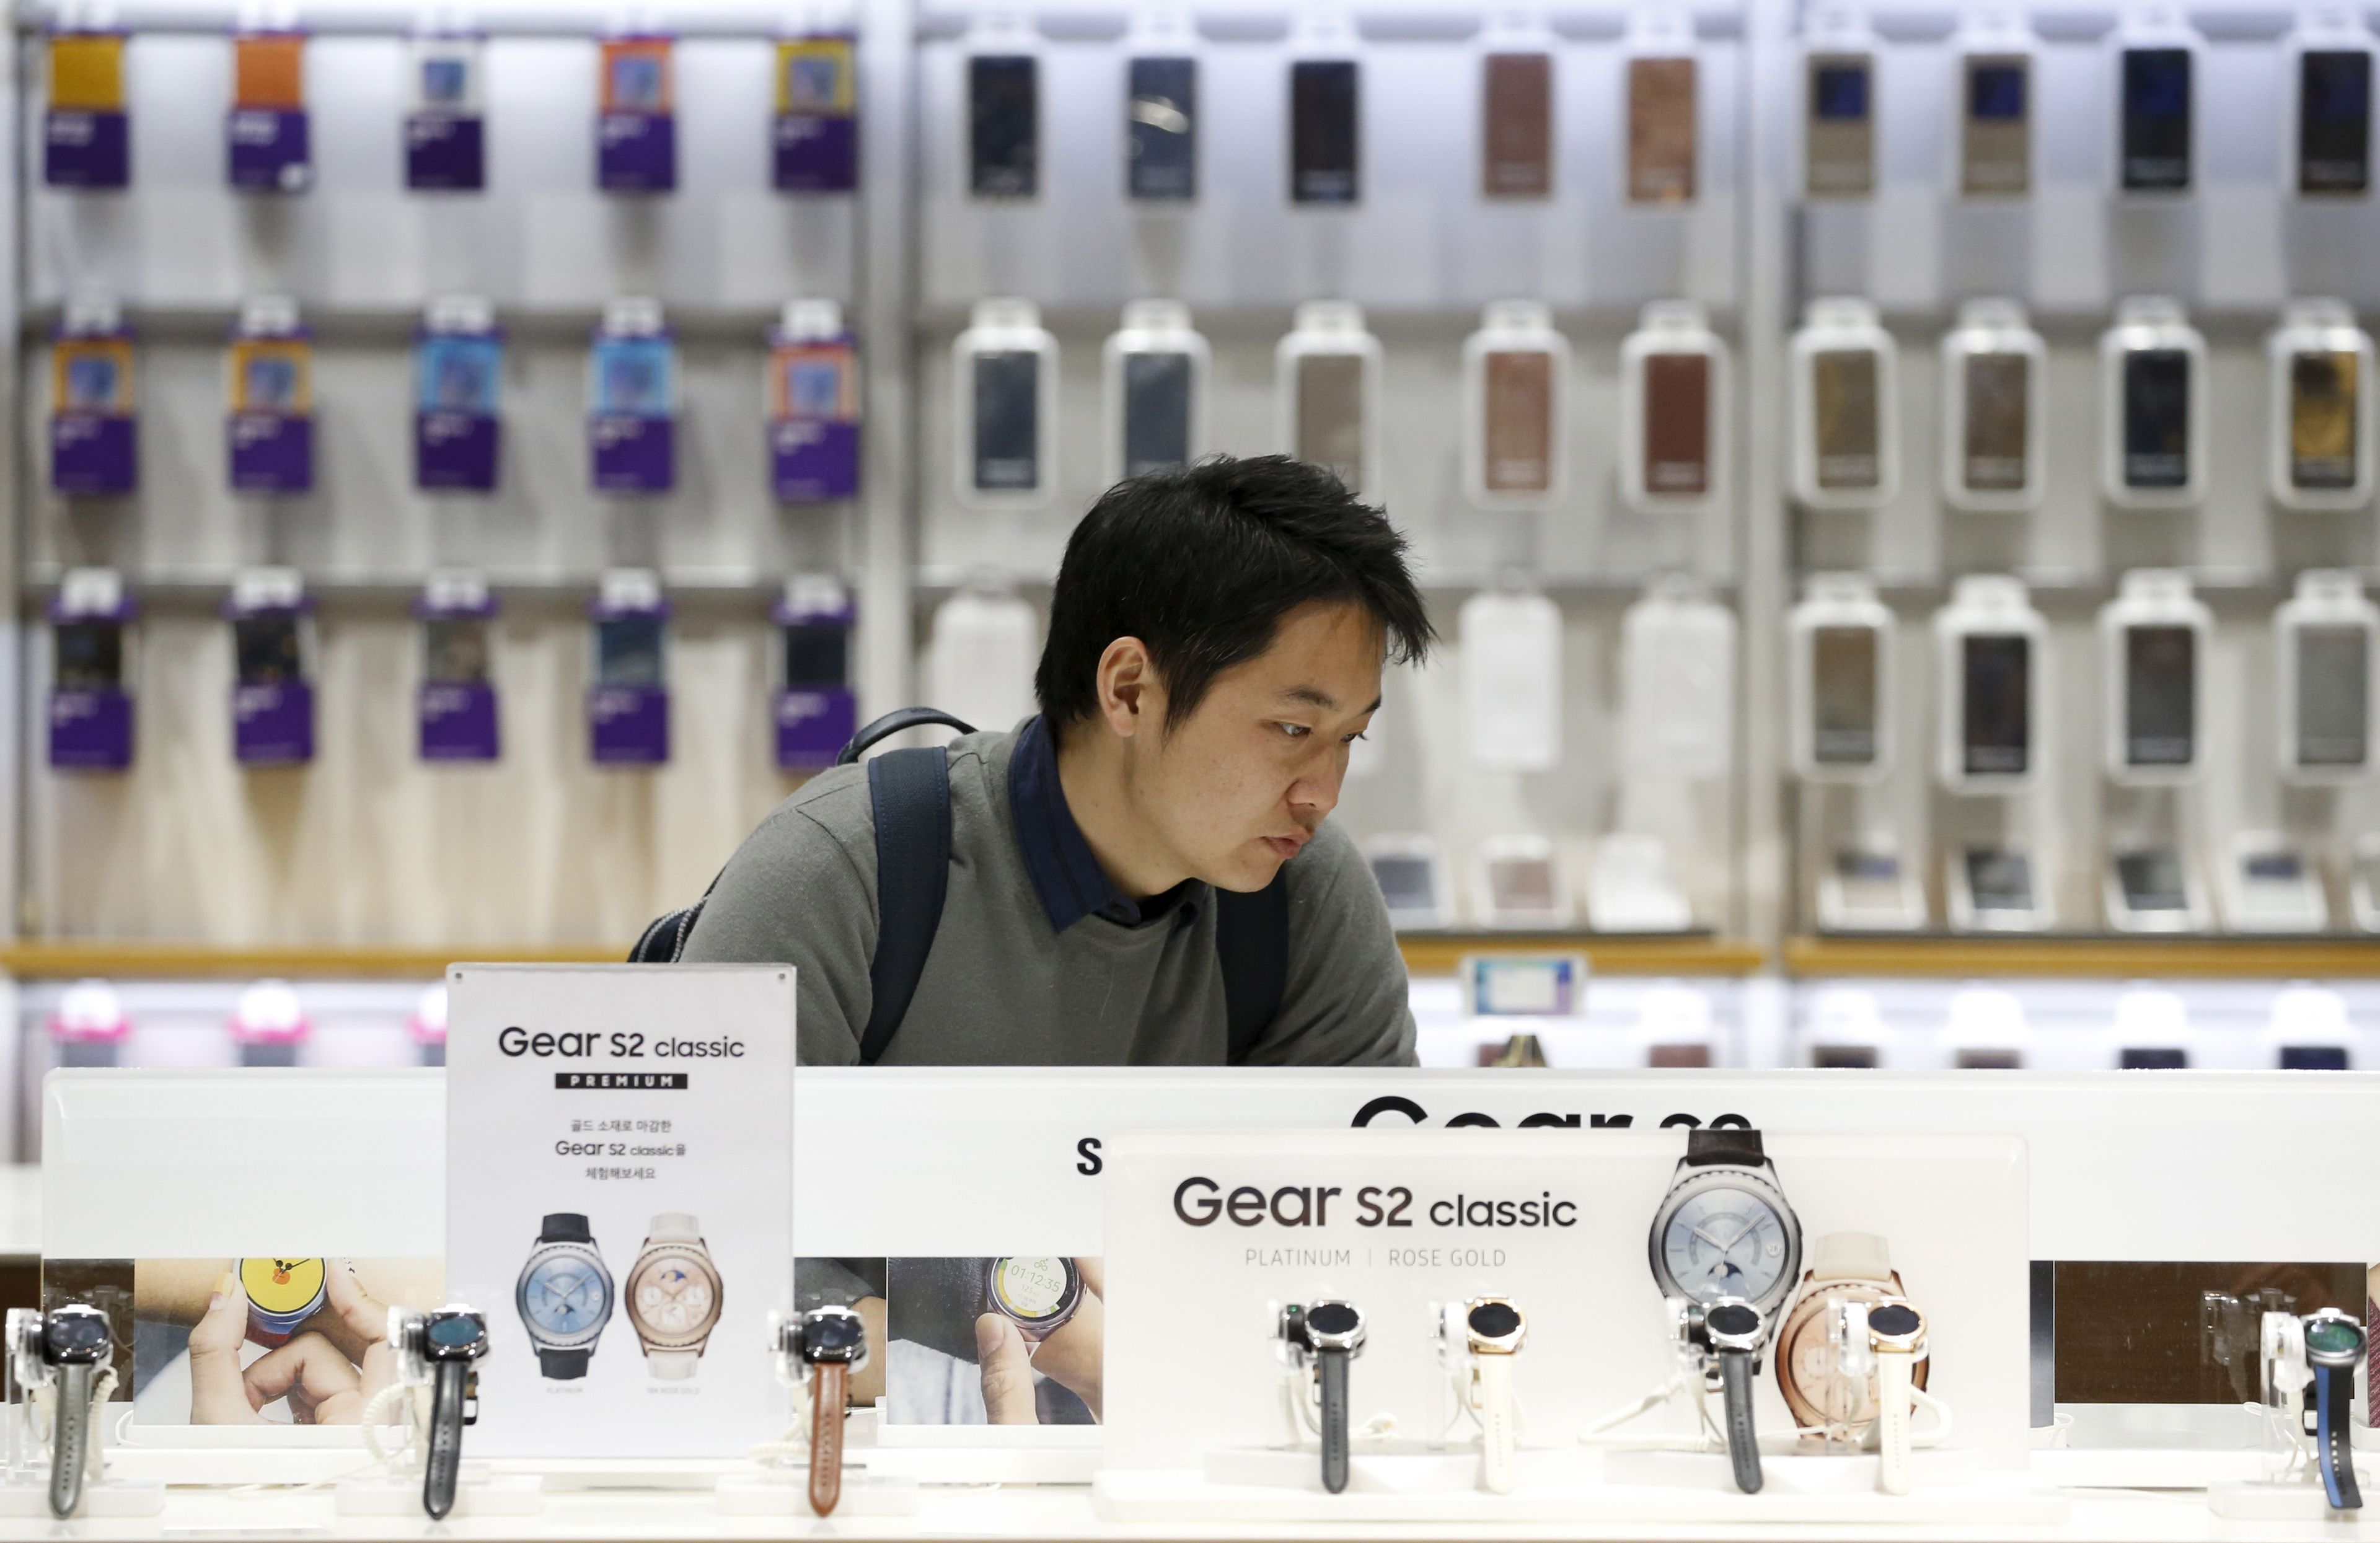 Móviles y relojes inteligentes en una tienda